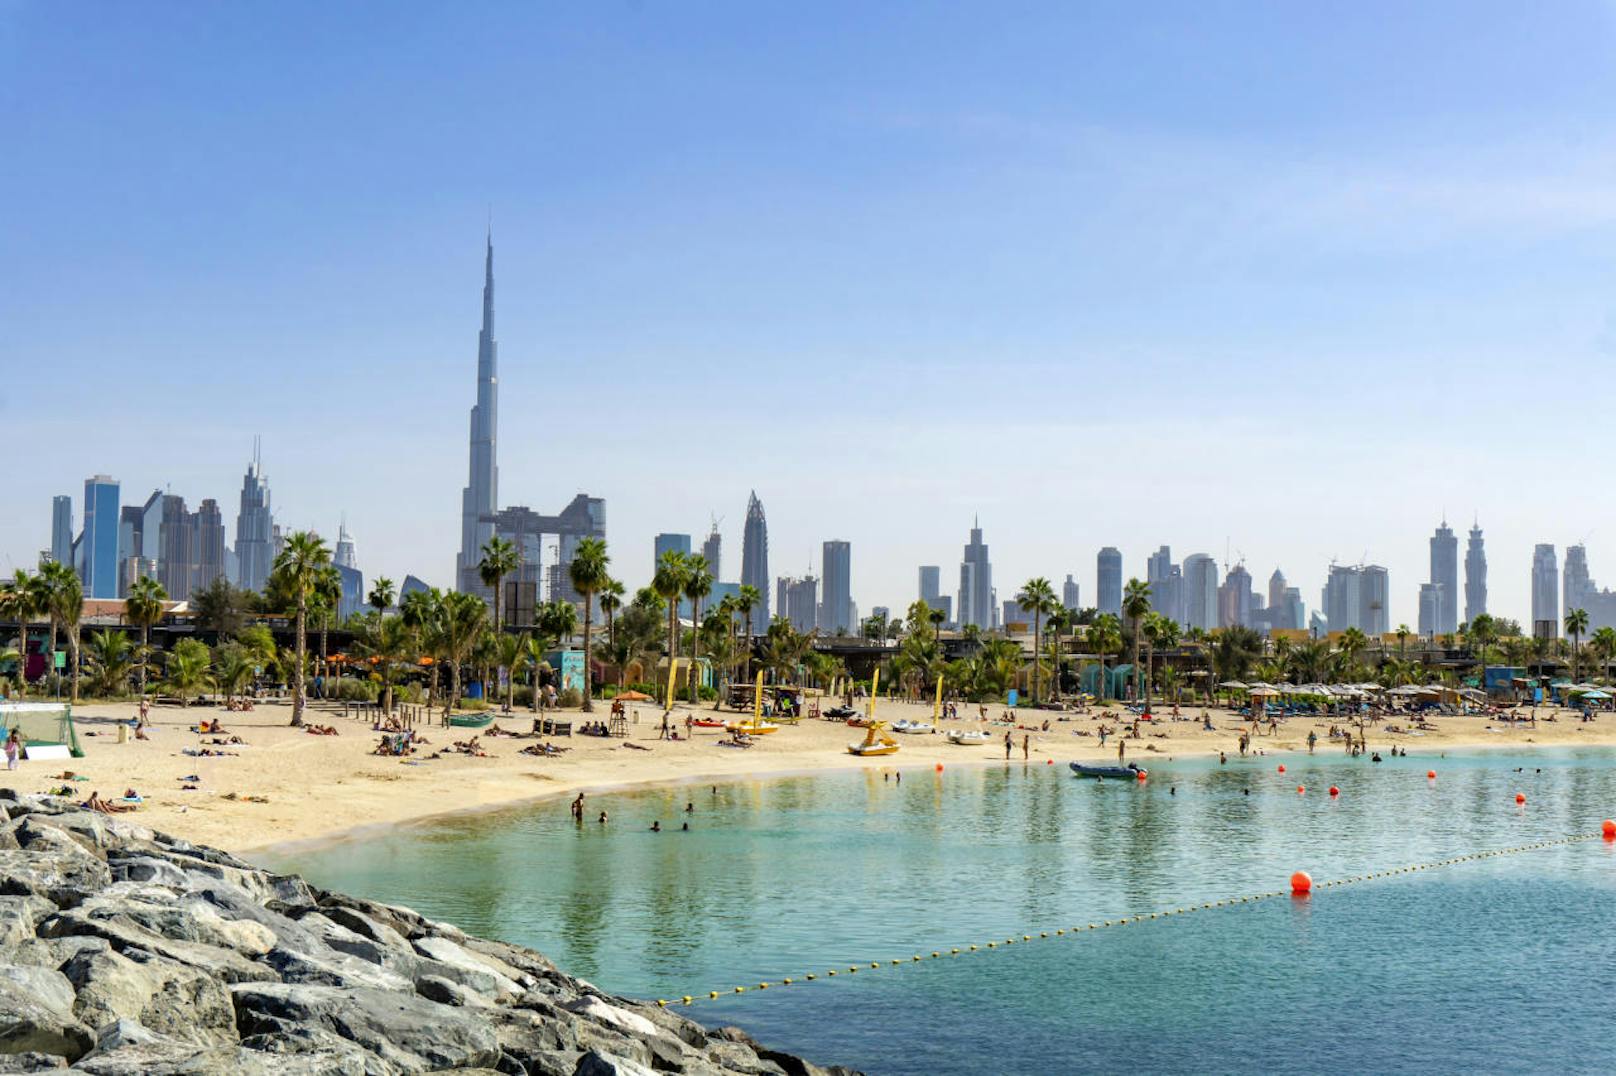 <b>4. Dubai - bis zu 8 Sonnenstunden pro Tag</b>

Wer eine Garantie für sonnenreiche Tage in den Ferien haben möchte, ist mit der größten Metropole der Vereinigten Arabischen Emirate gut beraten. Denn in Dubai können Reisende selbst im Winter mit durchschnittlich acht Stunden Sonne pro Tag rechnen. Im Meer baden, eine Wüstensafari unternehmen oder Palm Island besuchen: In Dubai ist das im Dezember deutlich angenehmer als im Sommer, in dem es fast zu heiß ist, um sich draußen zu bewegen.